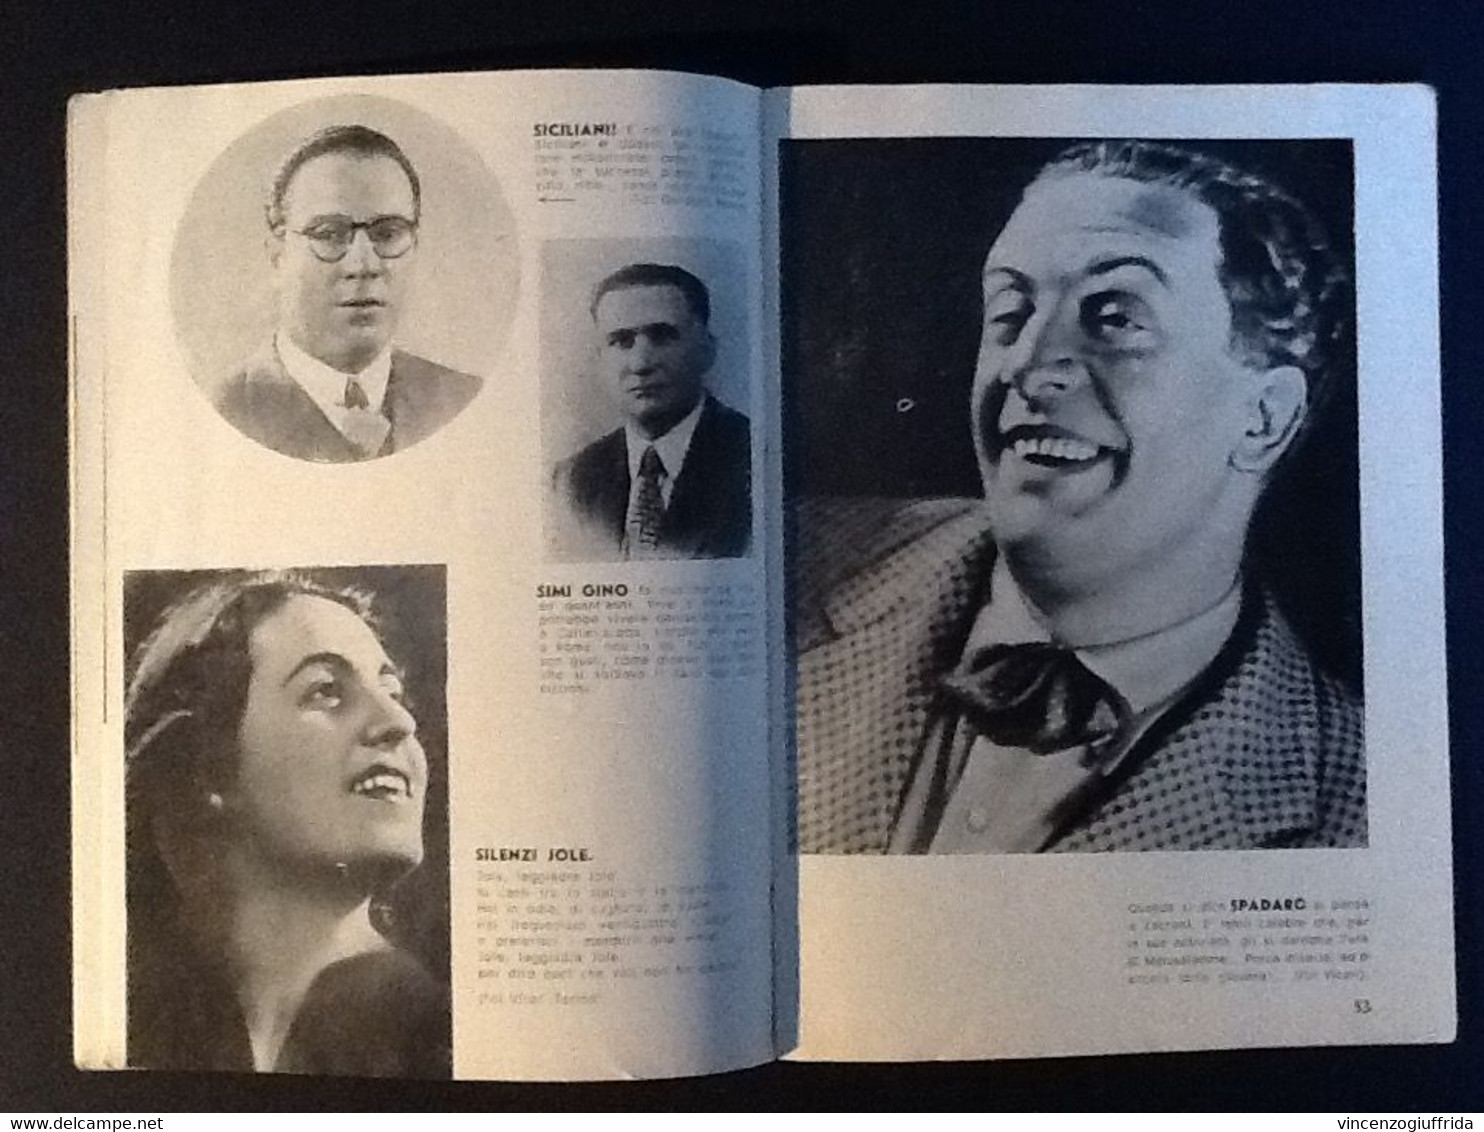 Boccasile Copertine LOTTO DE “Il CANZONIERE DELLA RADIO” ANNI( 1941-1943) n.6 riviste